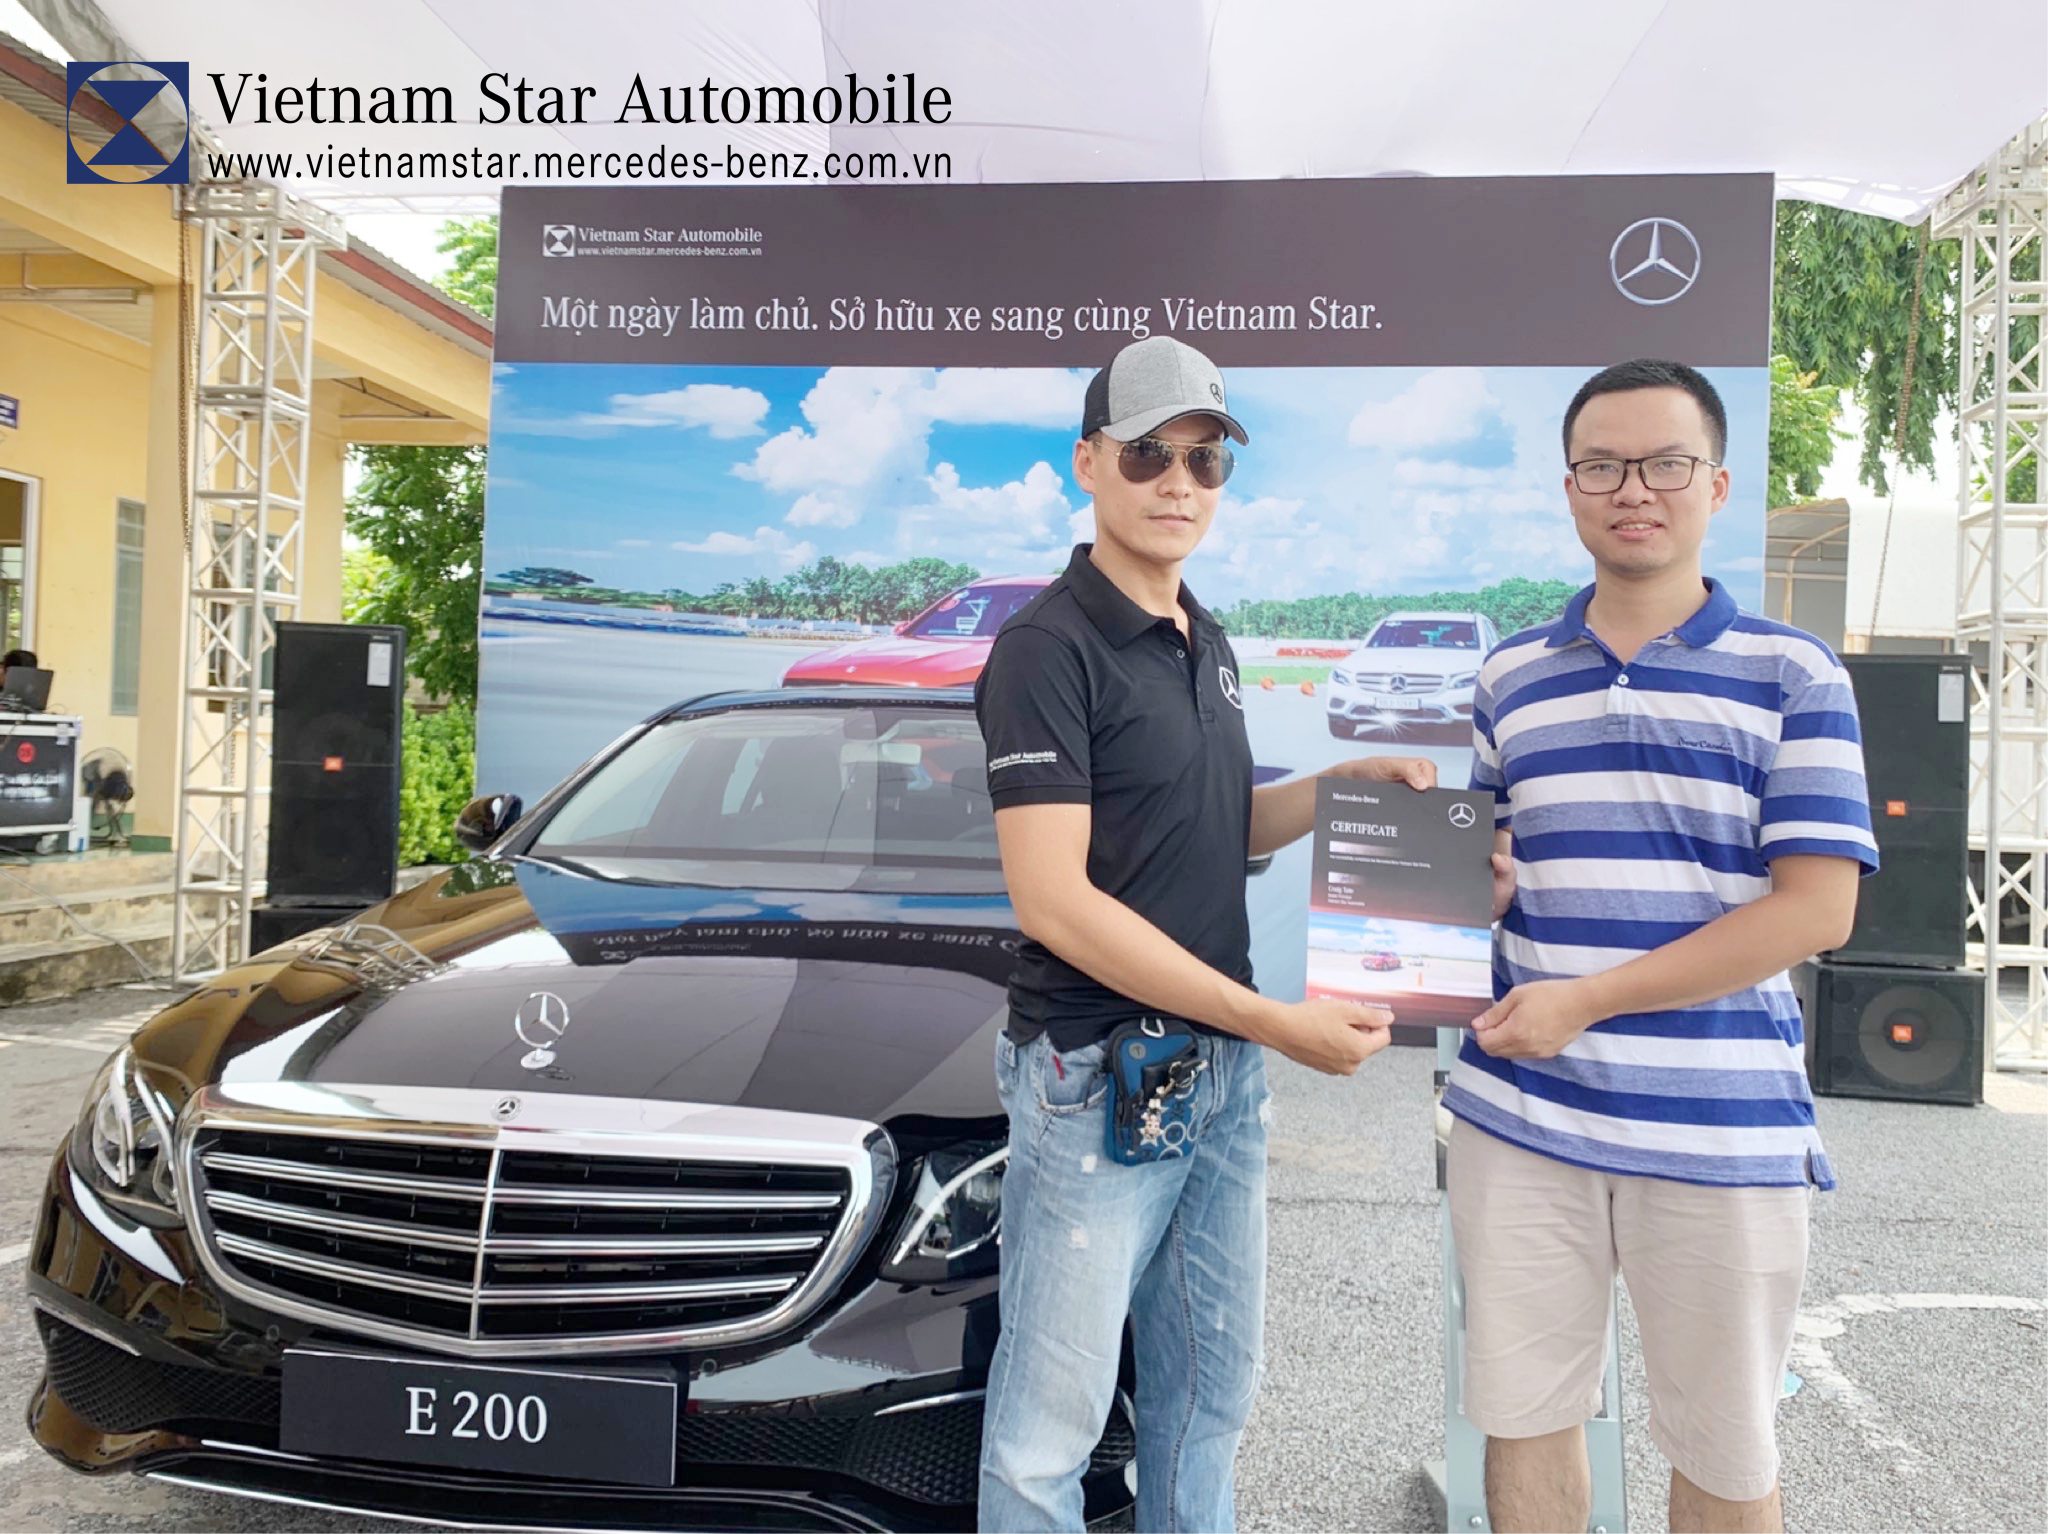 QC] Trải nghiệm “Một ngày làm chủ, Sở hữu xe sang” cùng Vietnam Star